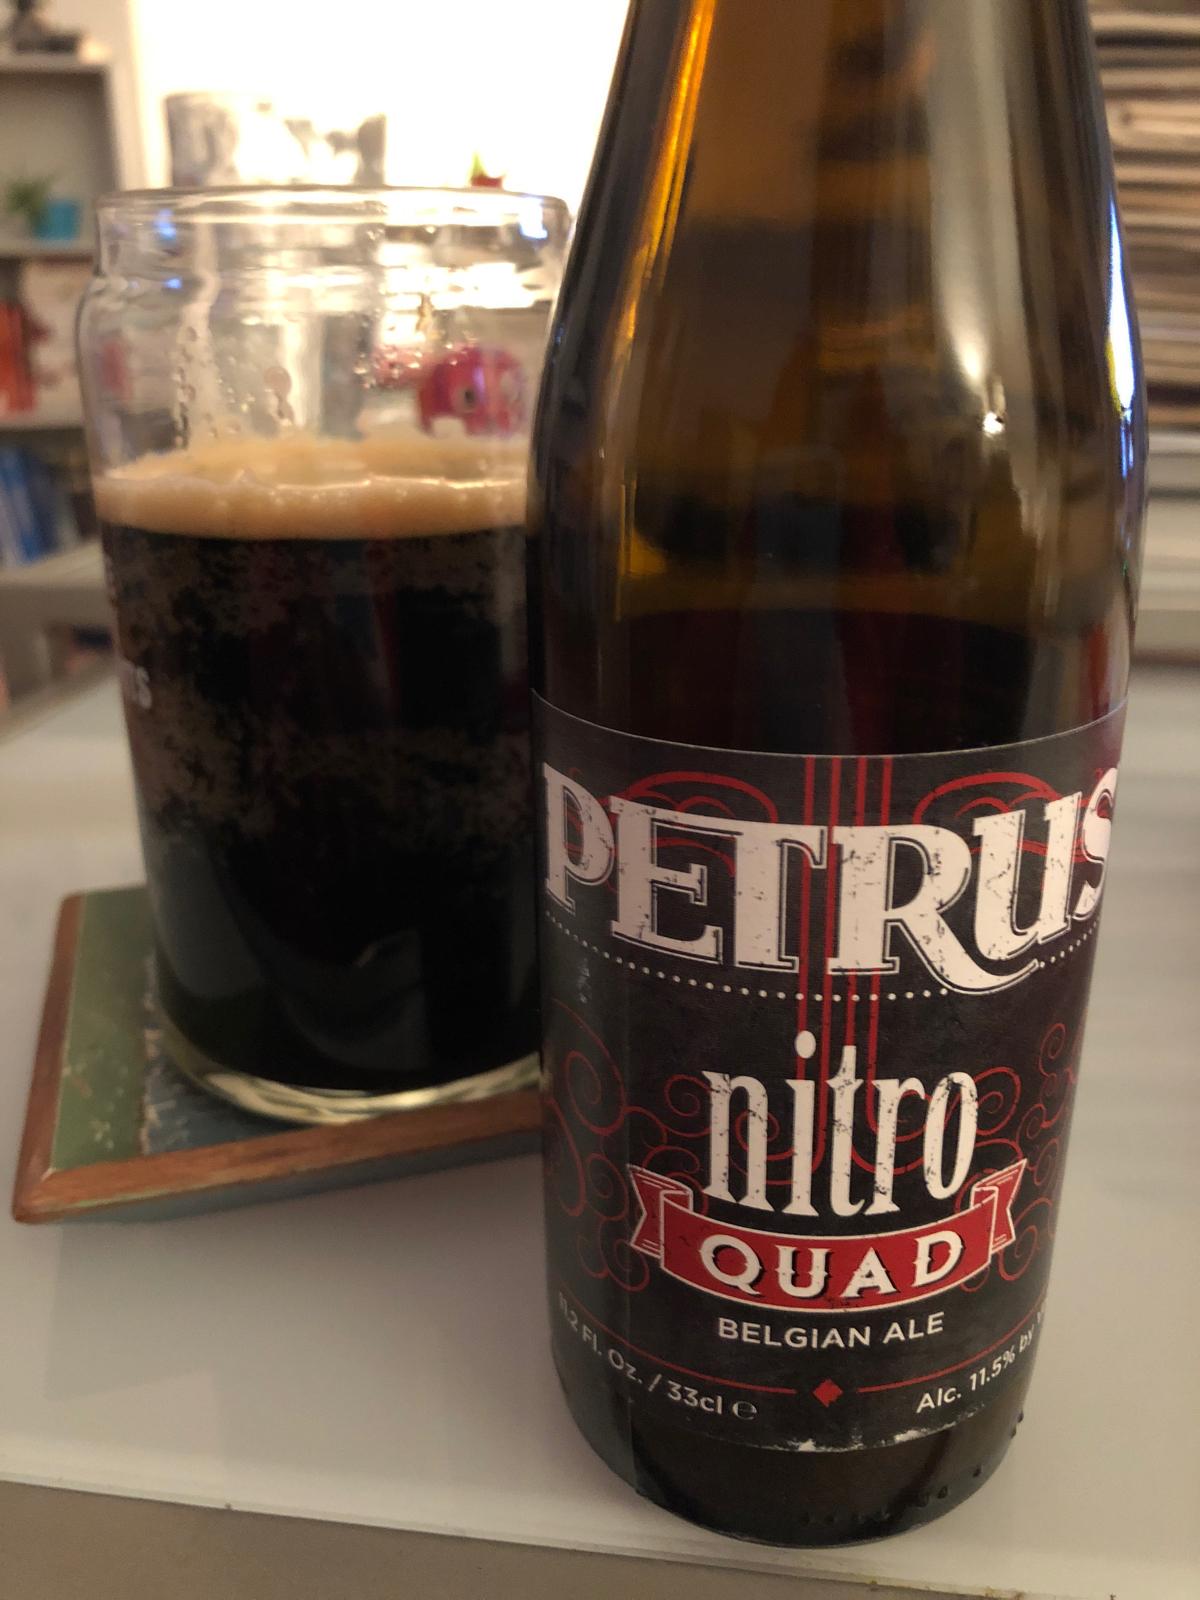 Petrus Nitro Quad